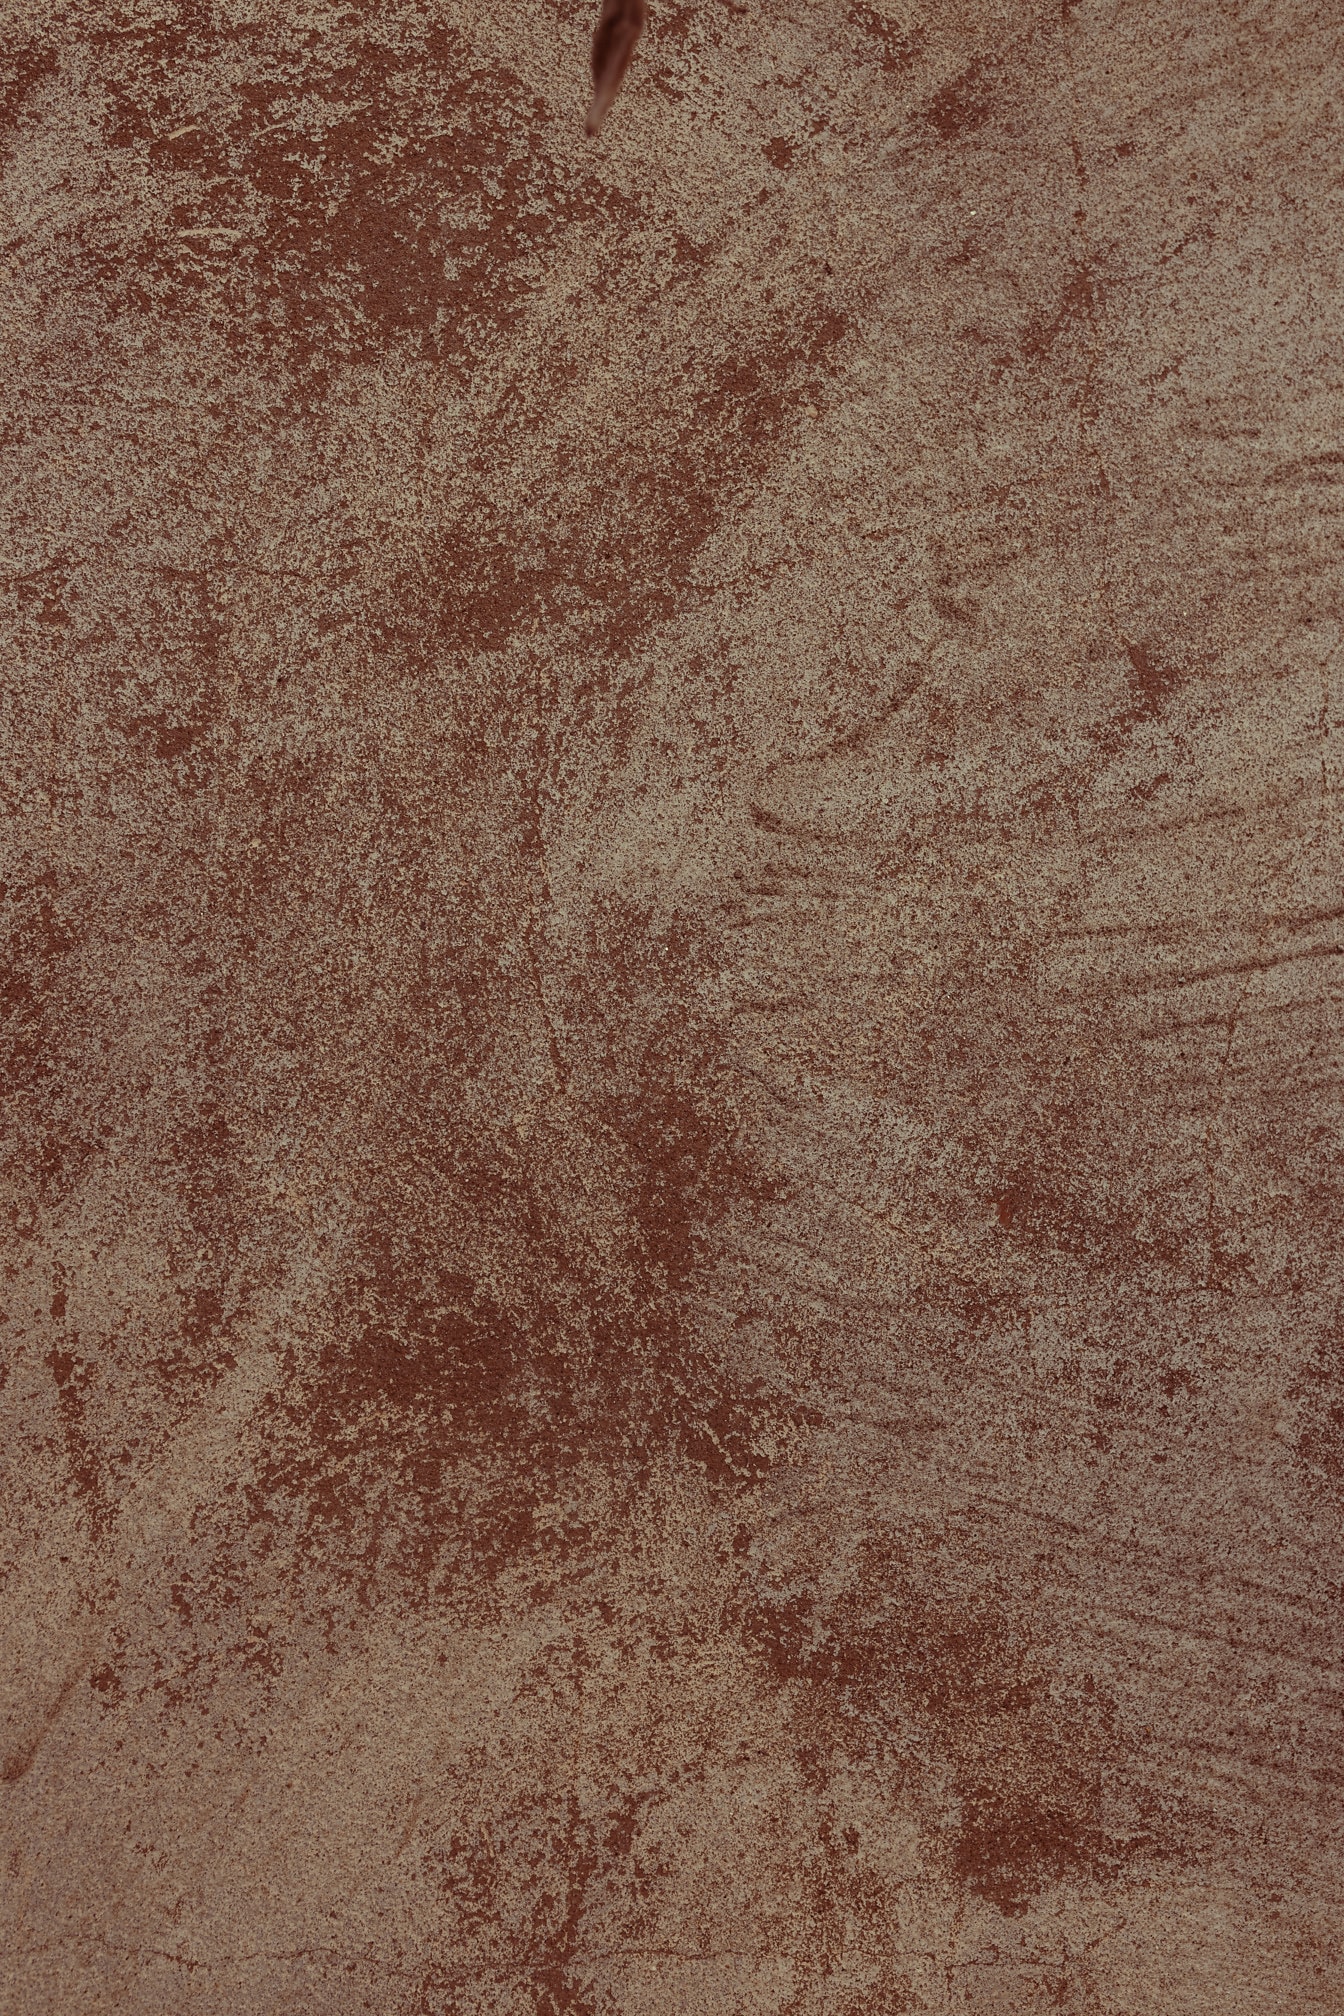 Czerwonawo-beżowa brudna tekstura powierzchni cementu zbliżenie